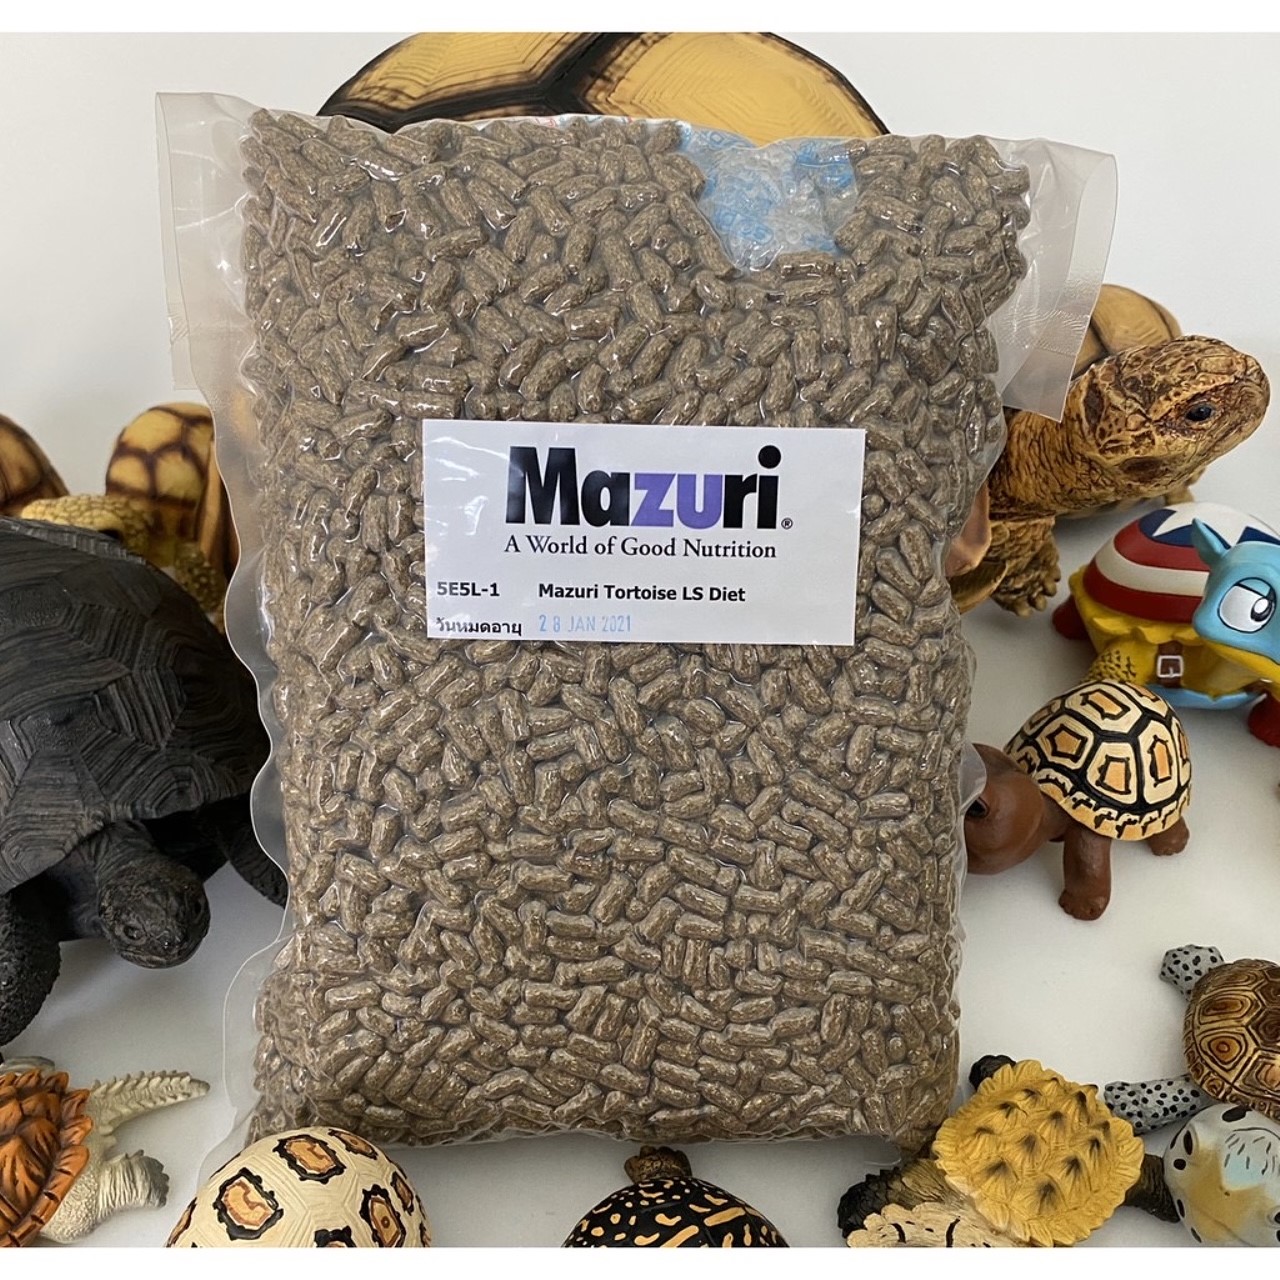 อาหารเต่าบก Mazuri 5E5L(มาซูริสูตรใหม่) 1kg ใช้กันทั่วโลก มีชื่อเสียงที่สุด เพิ่งเลี้ยงเต่าบกมาซูริไม่ผิดหวังEXP:29/03/2022